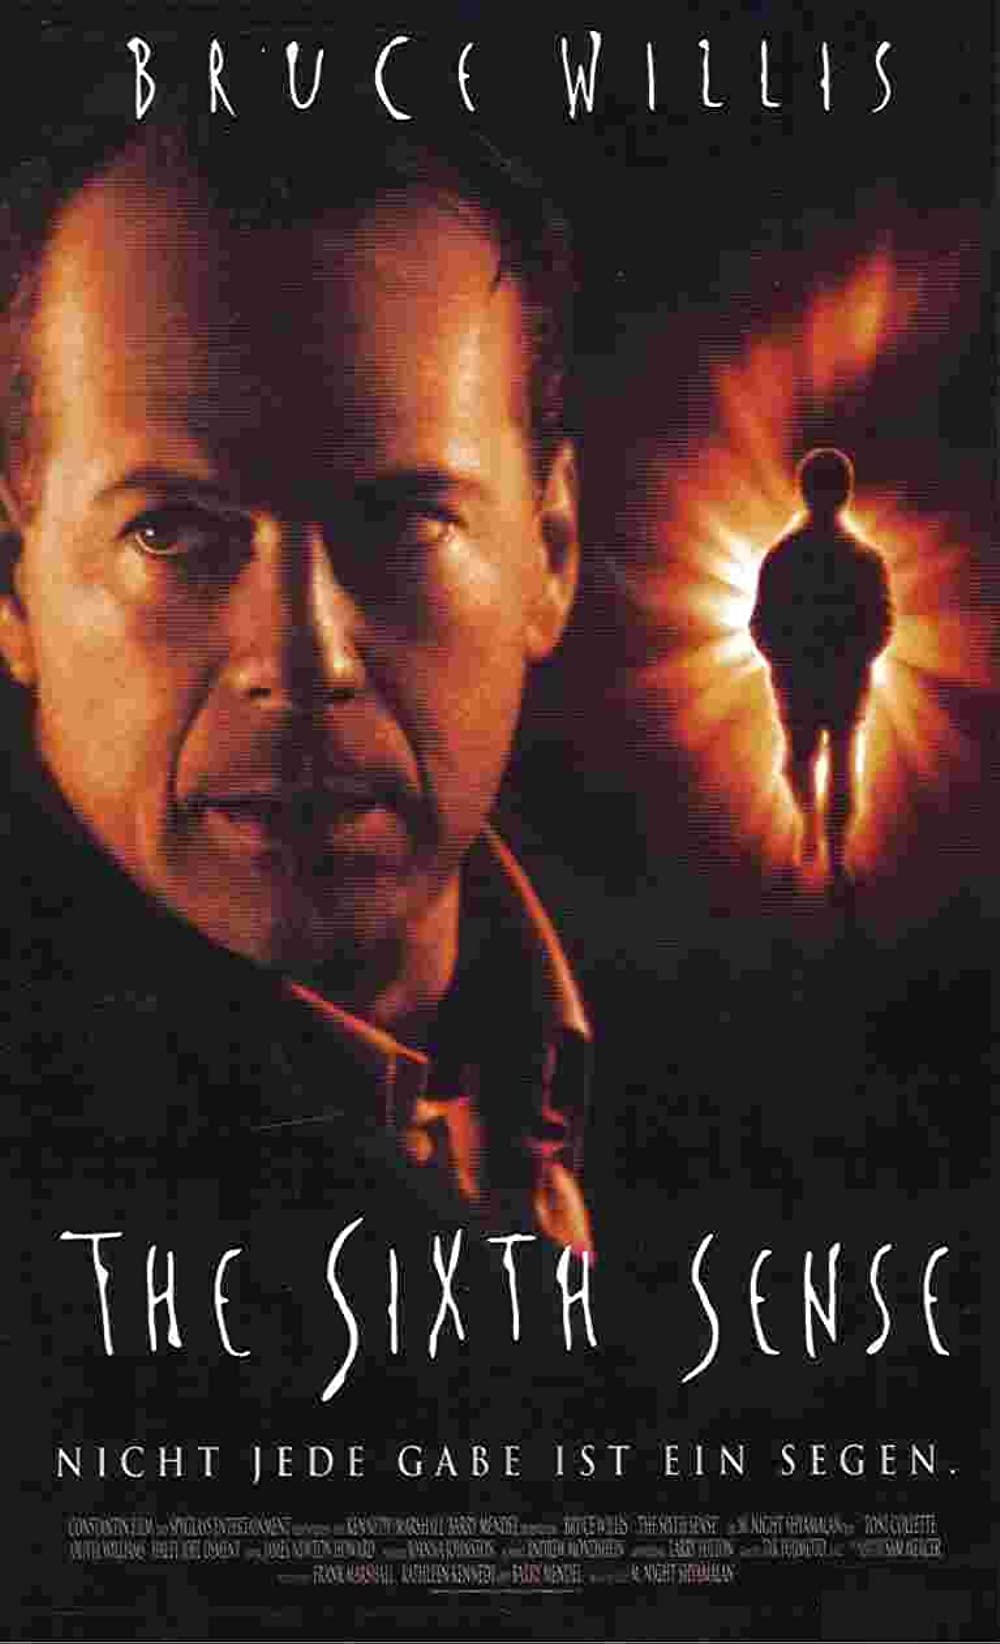 Filmbeschreibung zu The Sixth Sense (OV)